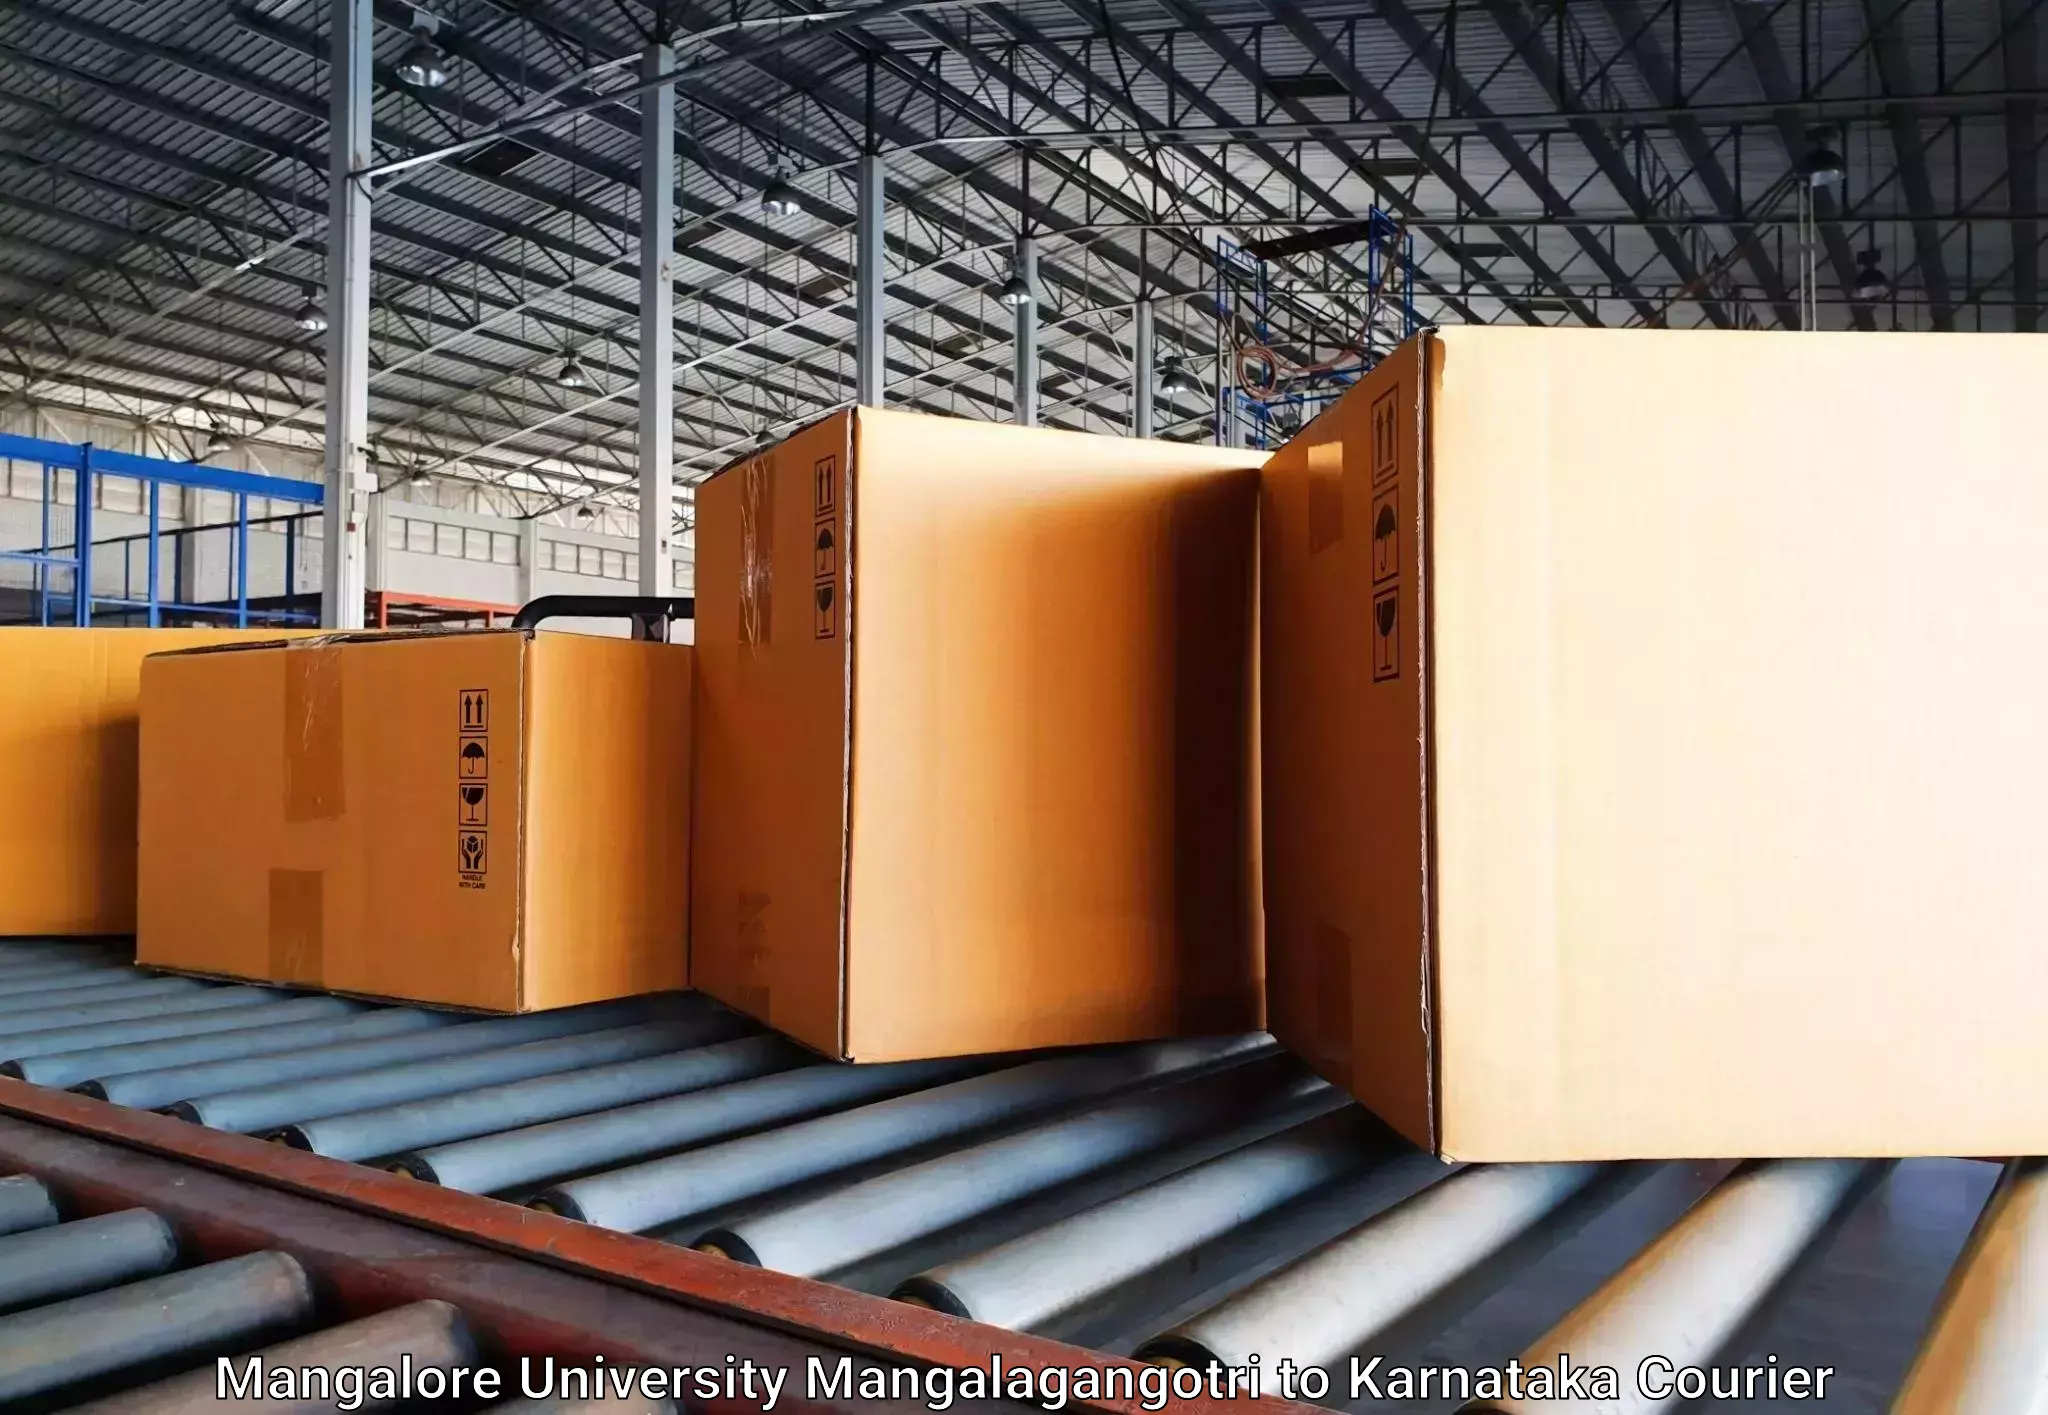 Baggage shipping experts Mangalore University Mangalagangotri to Hospet